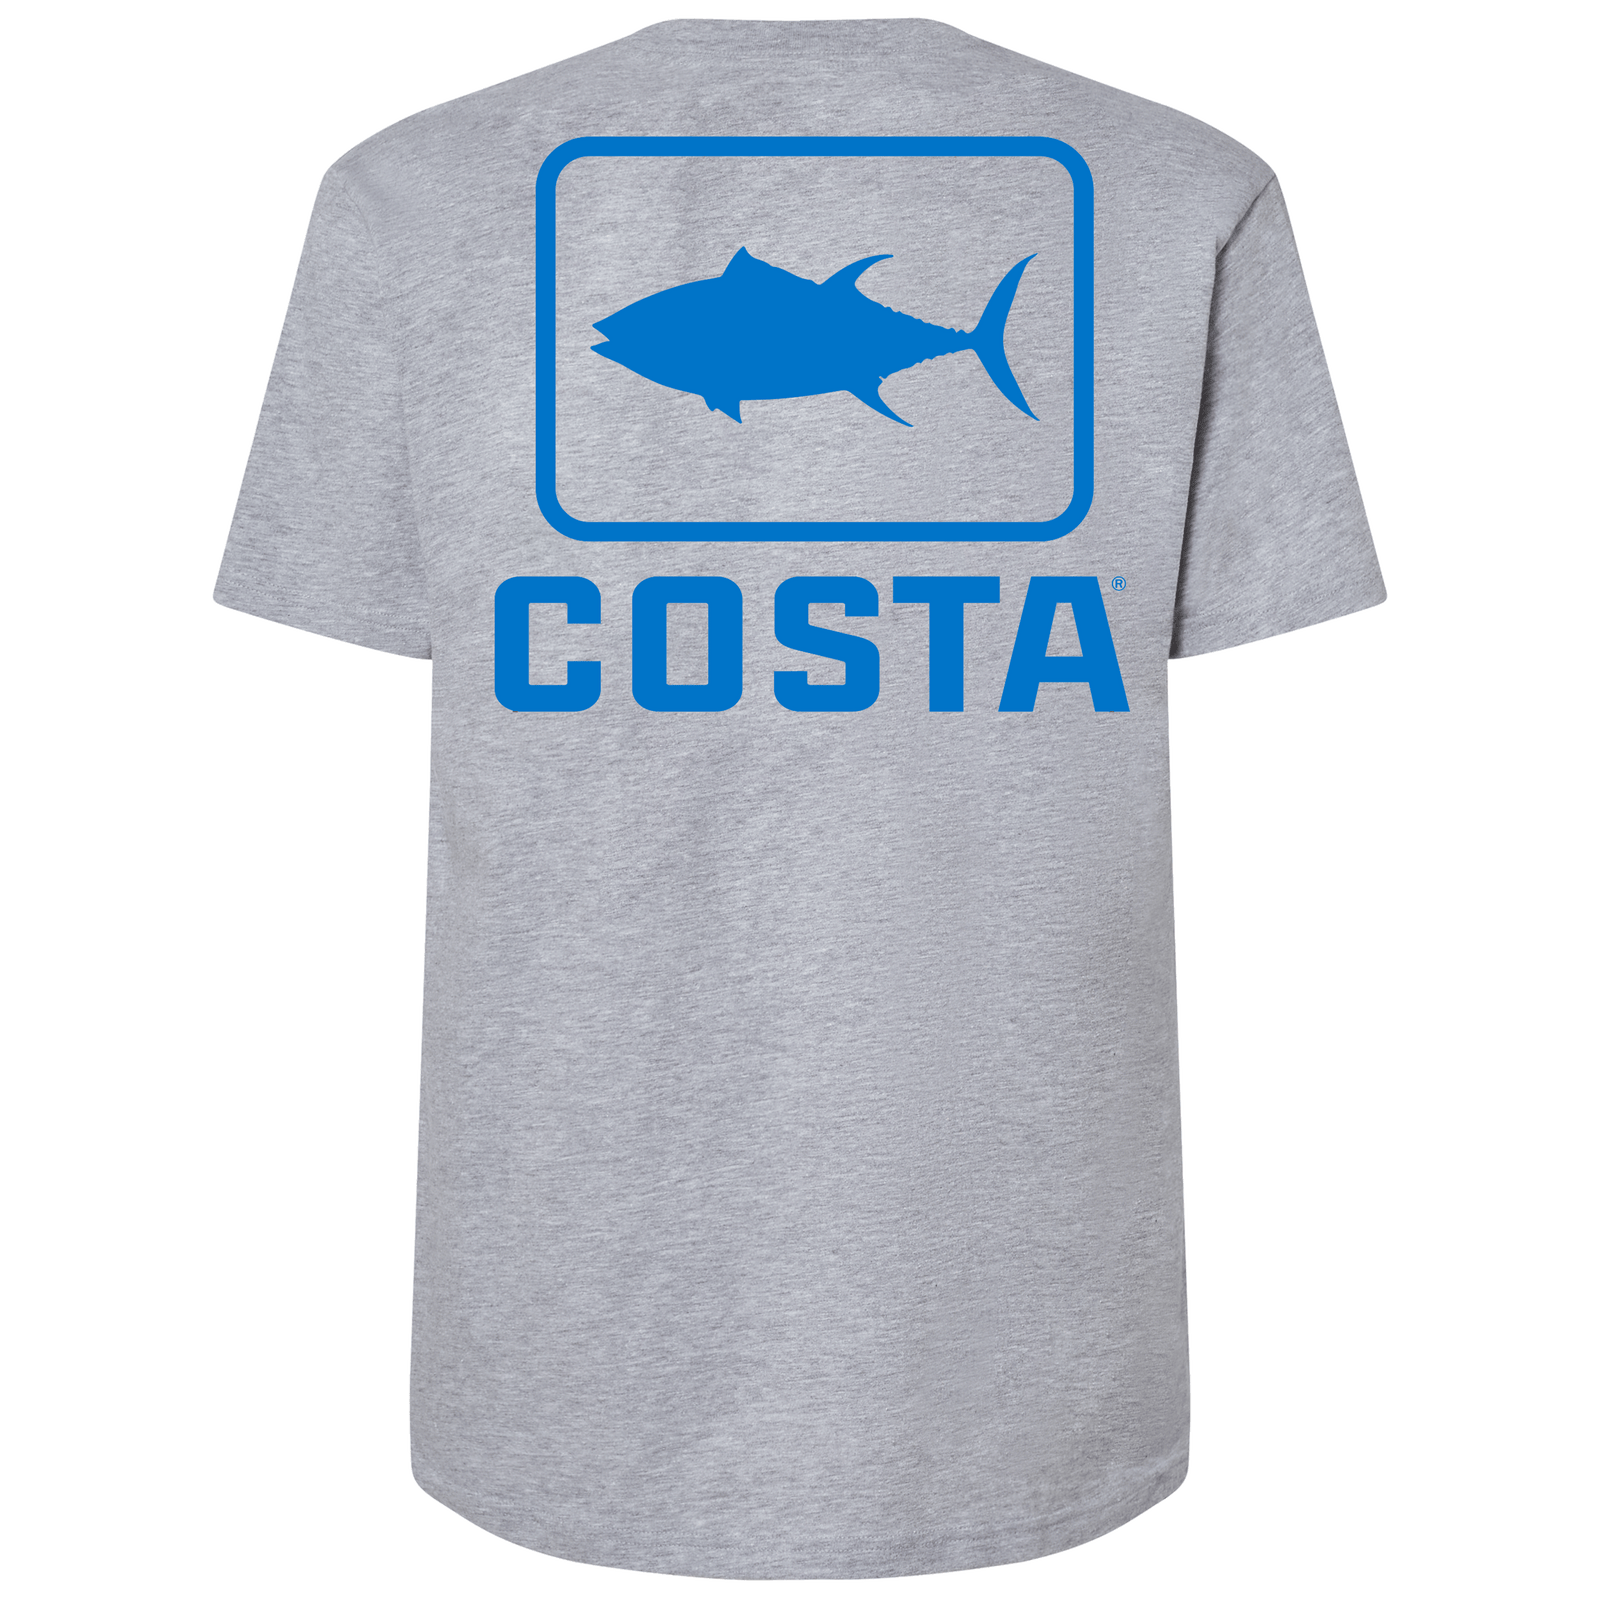 Ladies Light Green Short Sleeve Fishing Shirt – Reel Animals Fishing